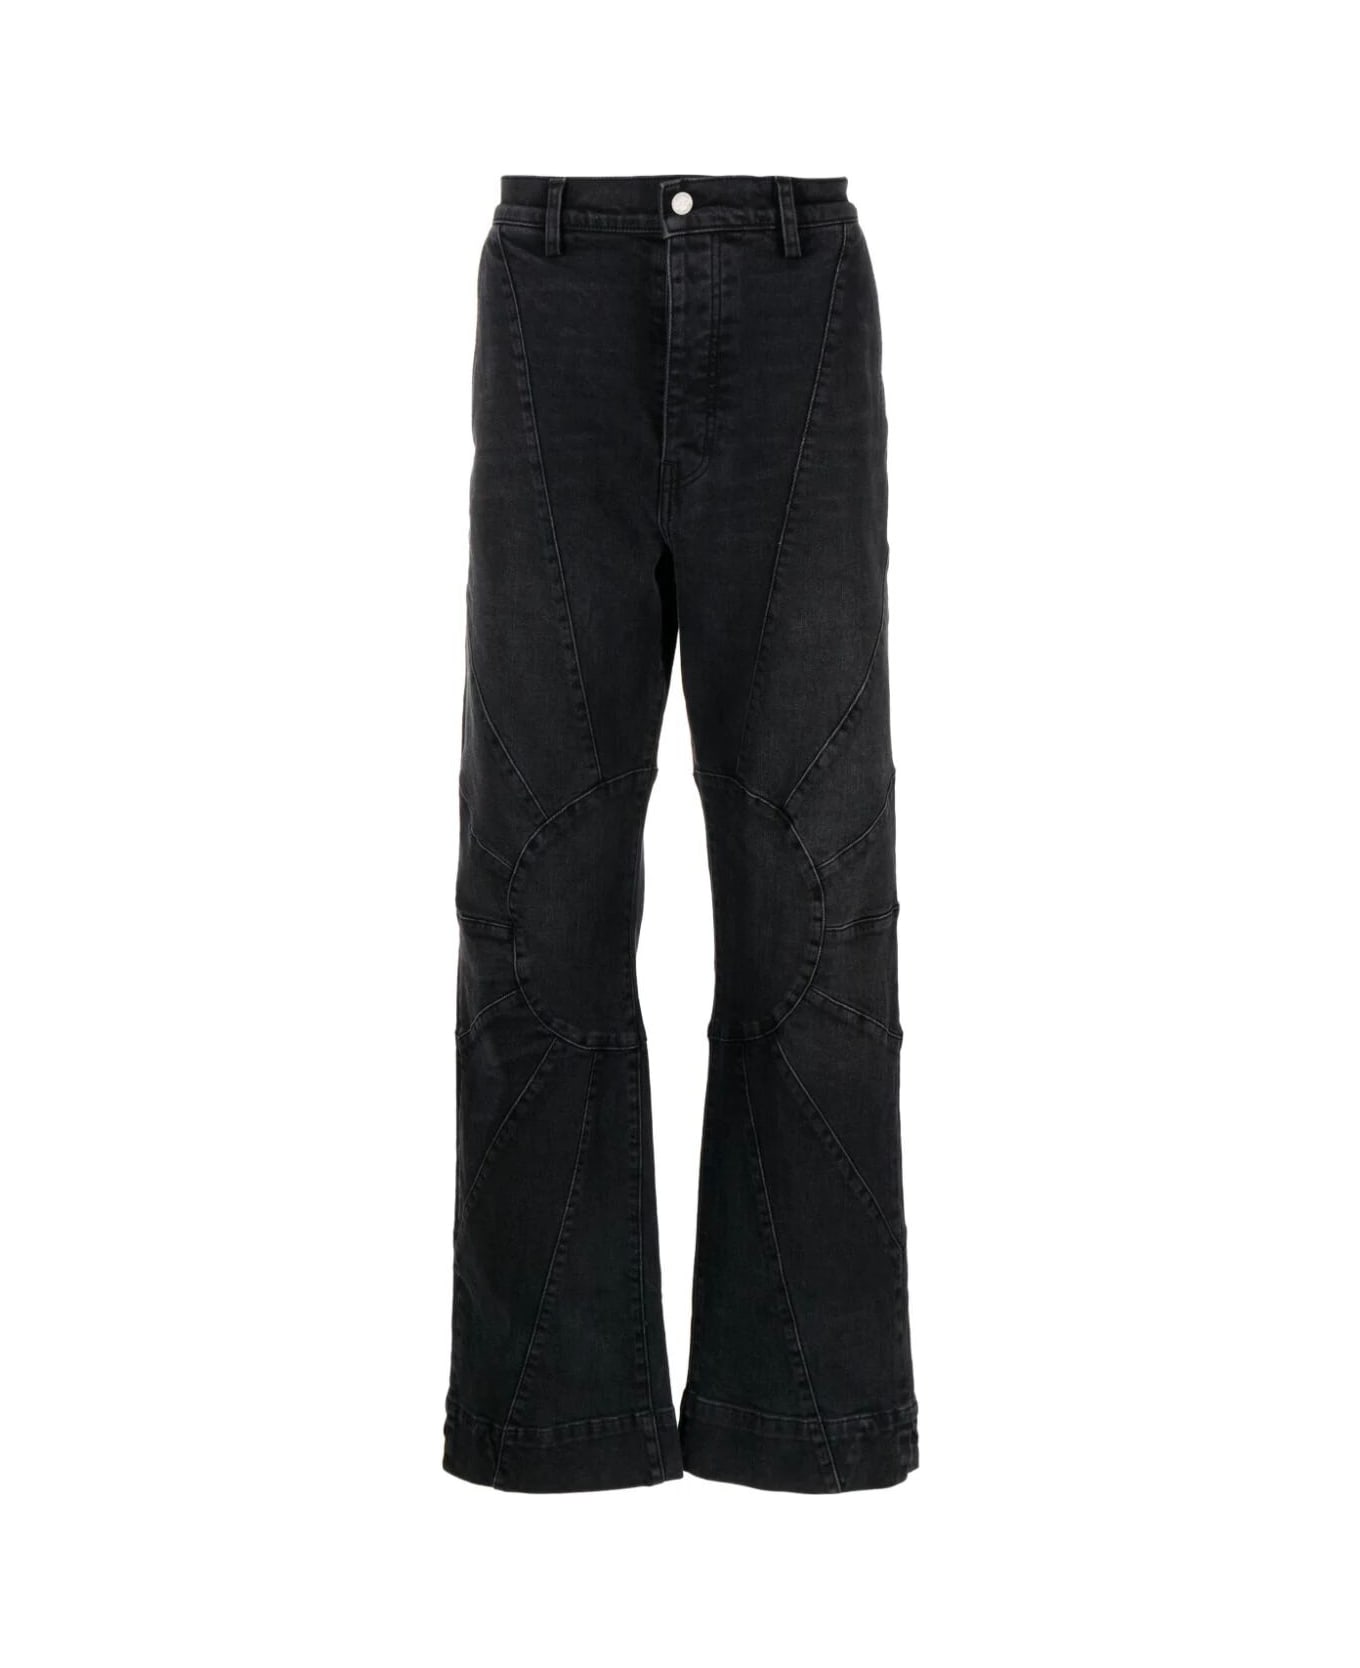 Nahmias Denim Sunshine Jeans - Charcoal Wash